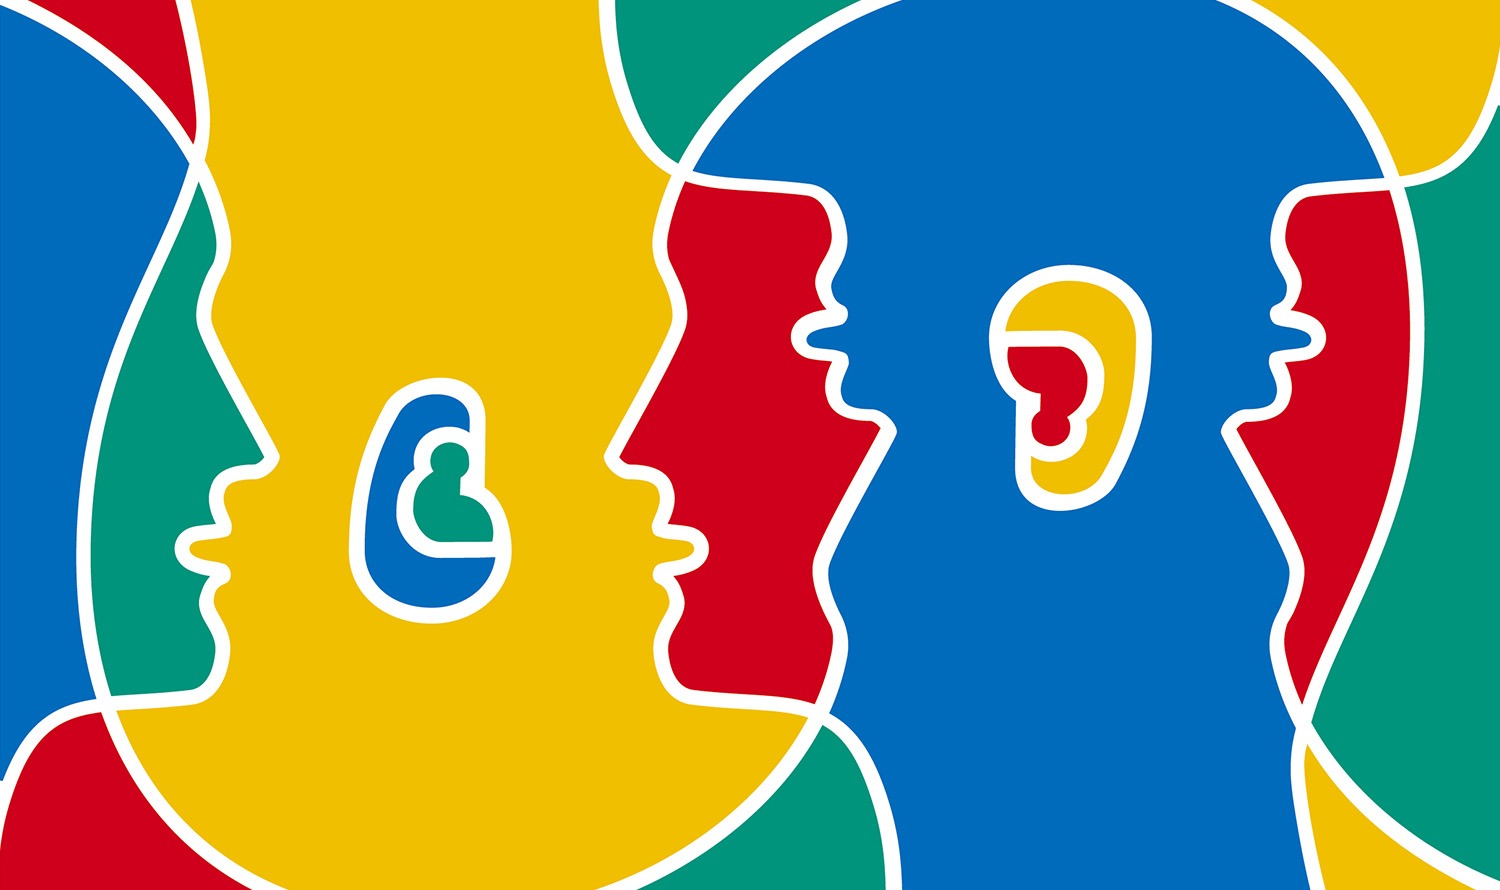 На зображенні зображено барвисті стилізовані обличчя у вигляді профілю, які, здається, спілкуються одне з одним, представлені накладеними кольорами та лініями.